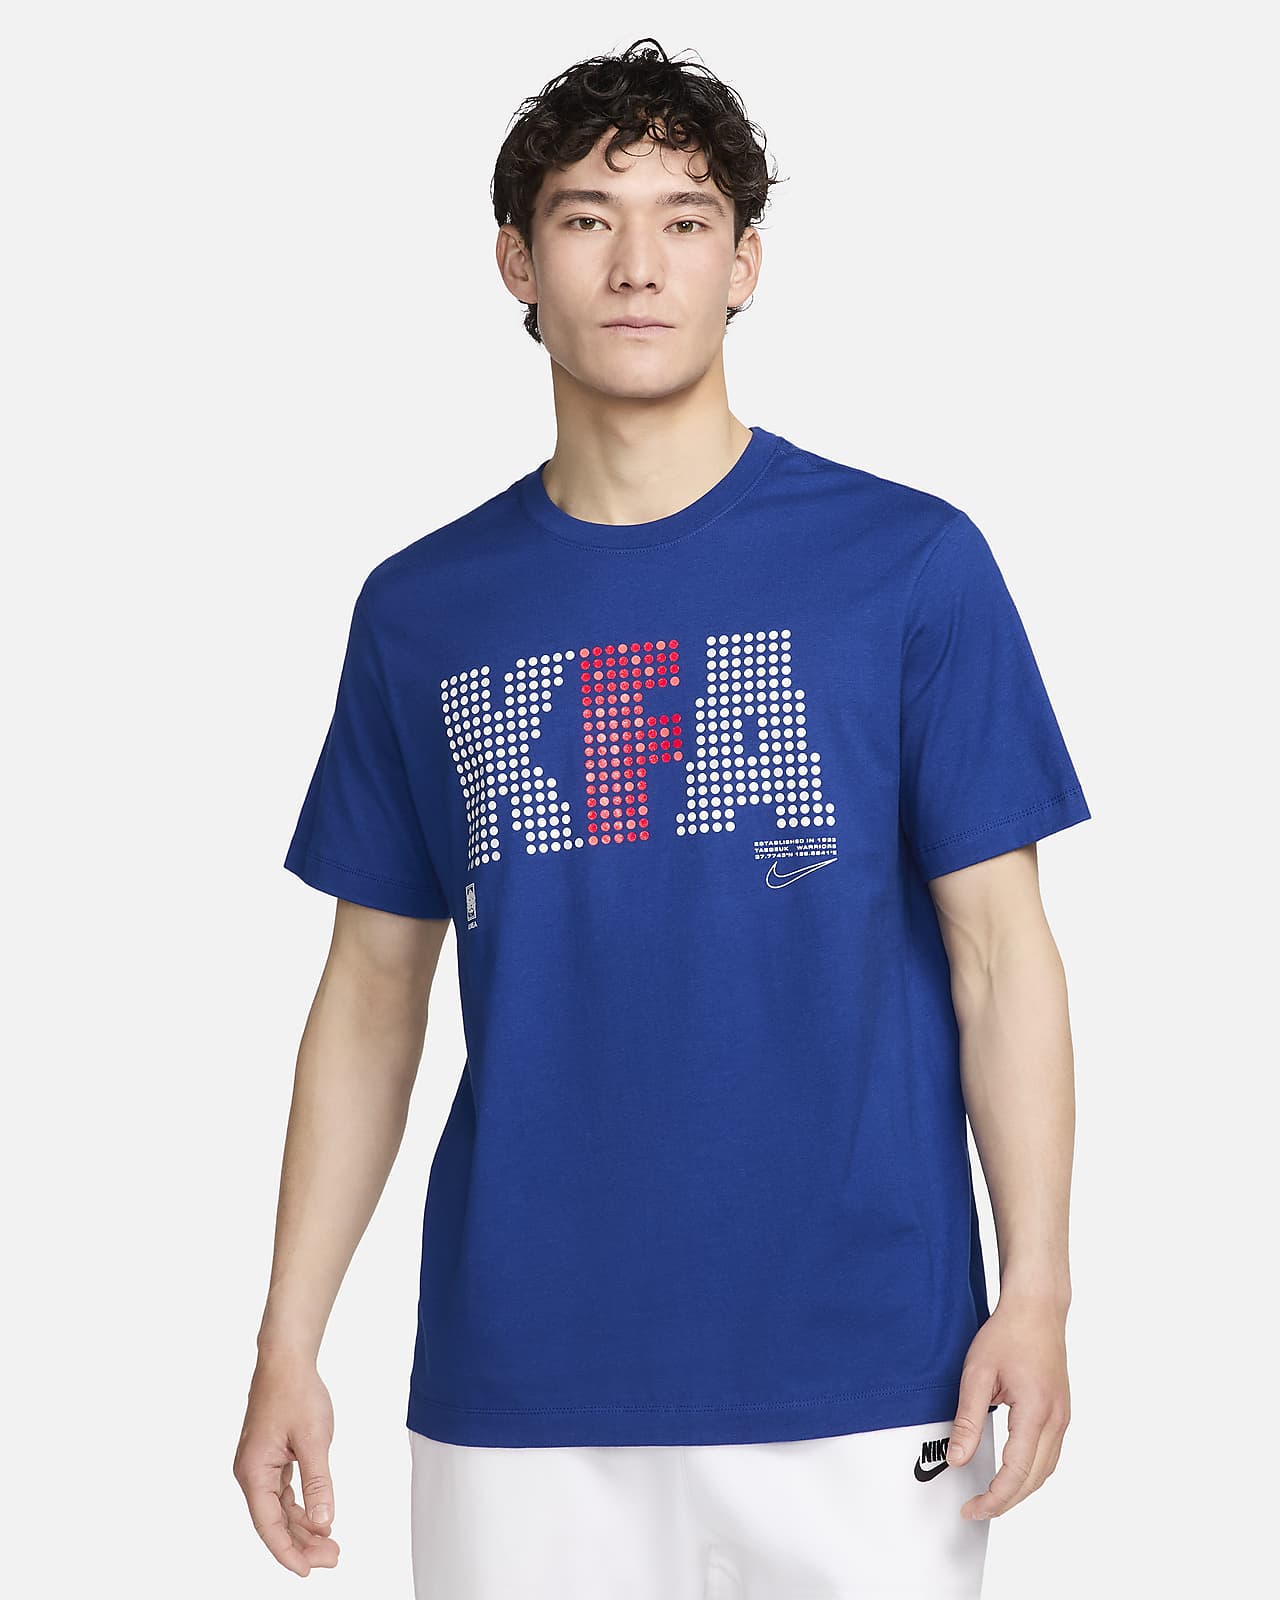 대한민국 남성 나이키 축구 티셔츠